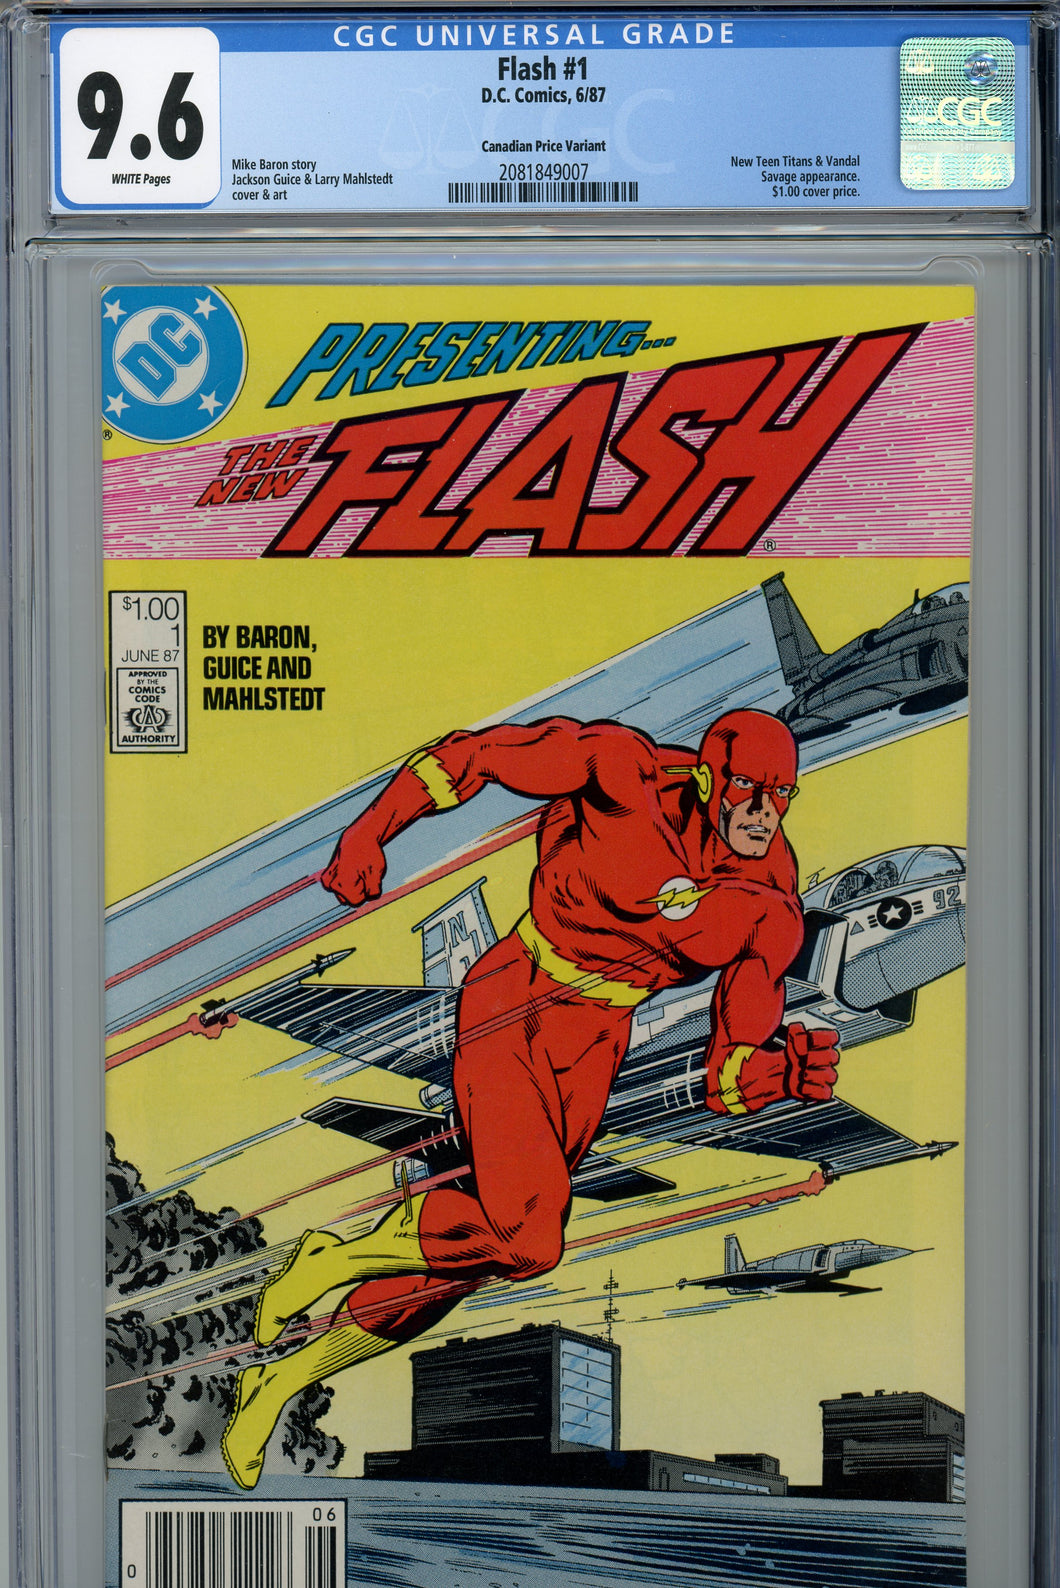 Flash #1 CGC 9.6 Canadian Price Variant